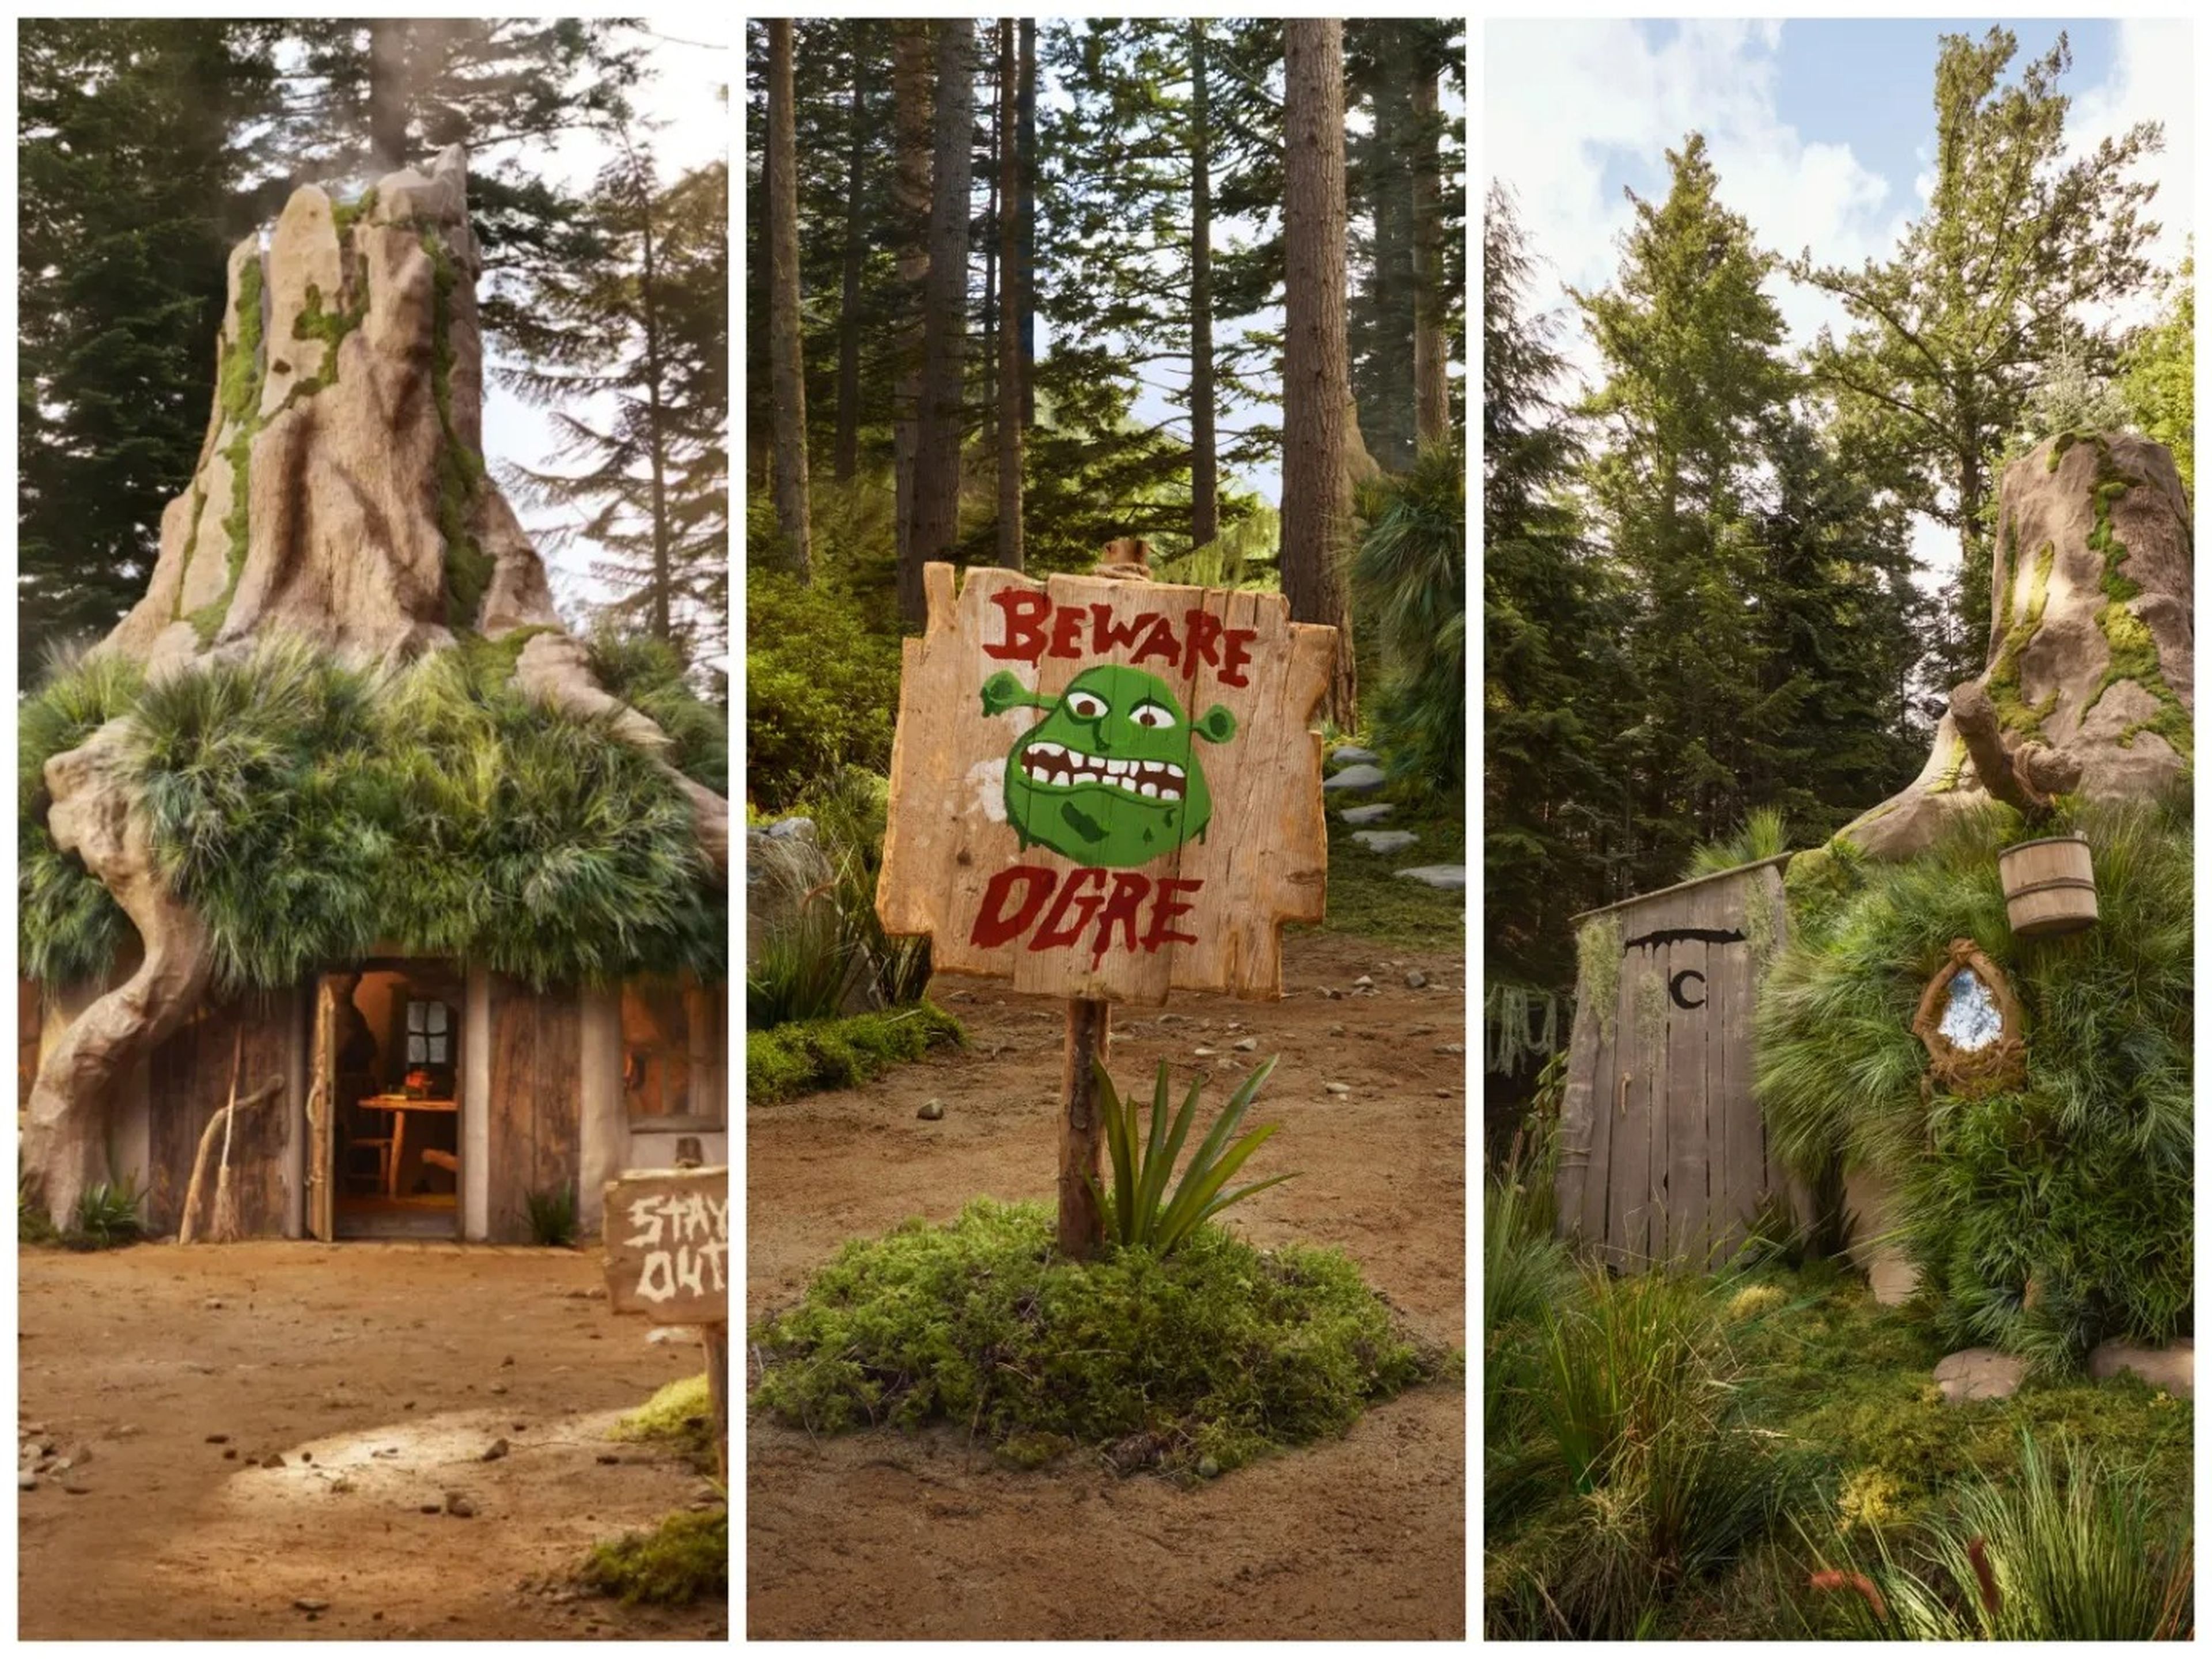 Los fans de Shrek pueden solicitar reservar una estancia en la ciénaga de Shrek de forma gratuita en Airbnb.